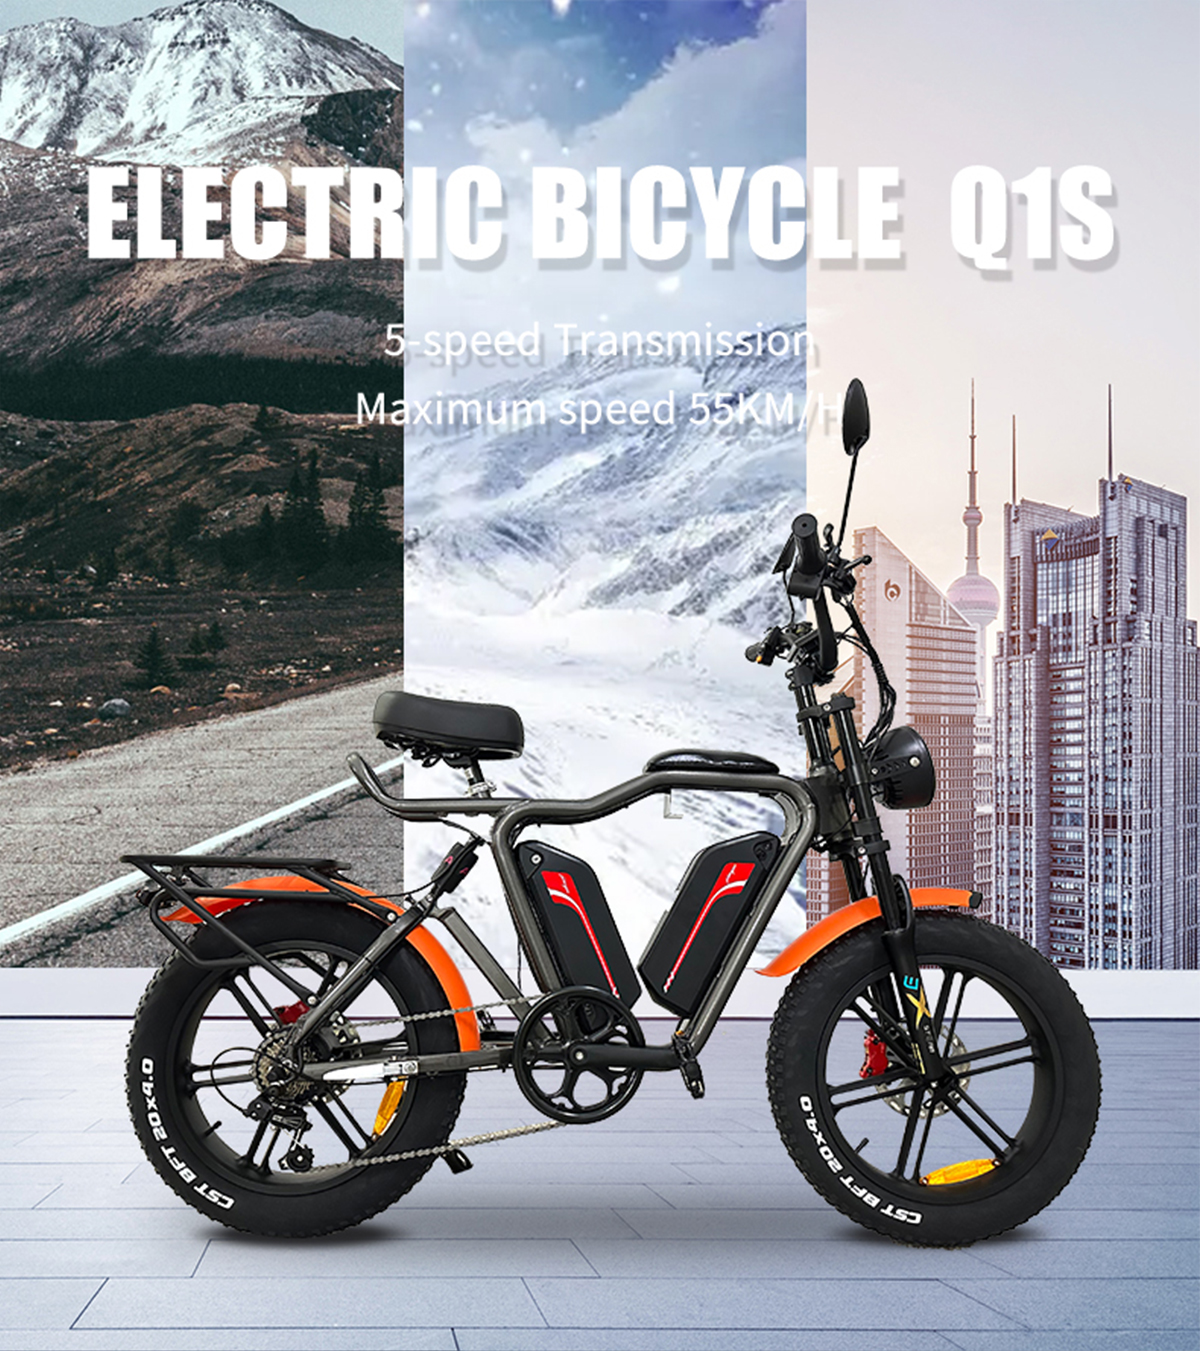 Cyclemix Ebike Q1S 48V 22Ah2 లిథియం బ్యాటరీ మెగ్నీషియం అల్లాయ్ ఇంటిగ్రేటెడ్ వీల్ Ebike వివరాలు 1